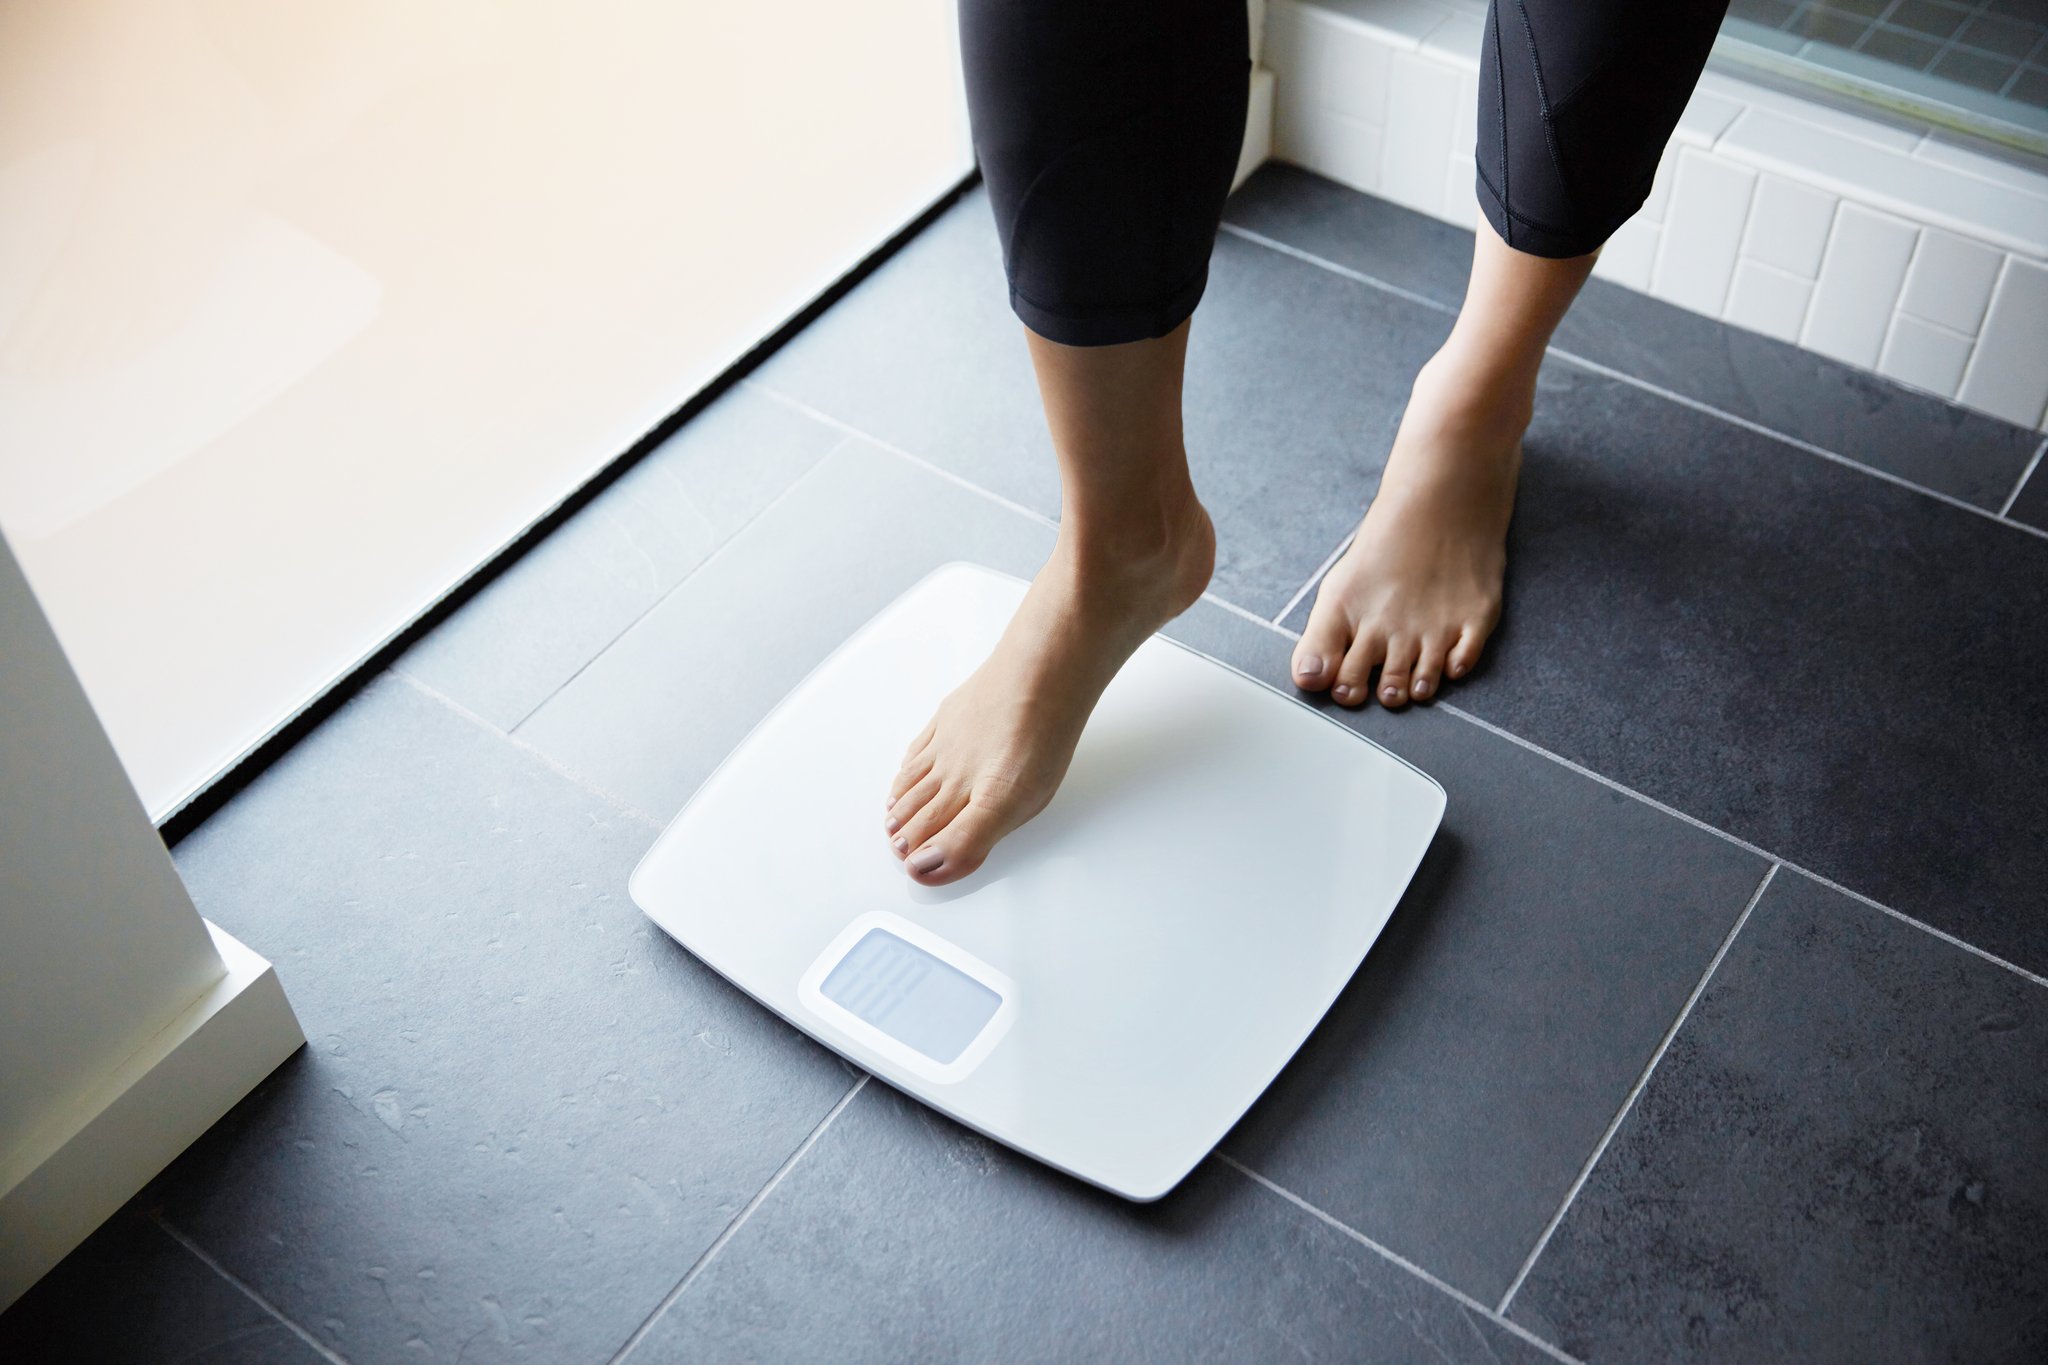 Nếu bạn đang có vấn đề về cân nặng thì nên giảm cân một cách từ từ